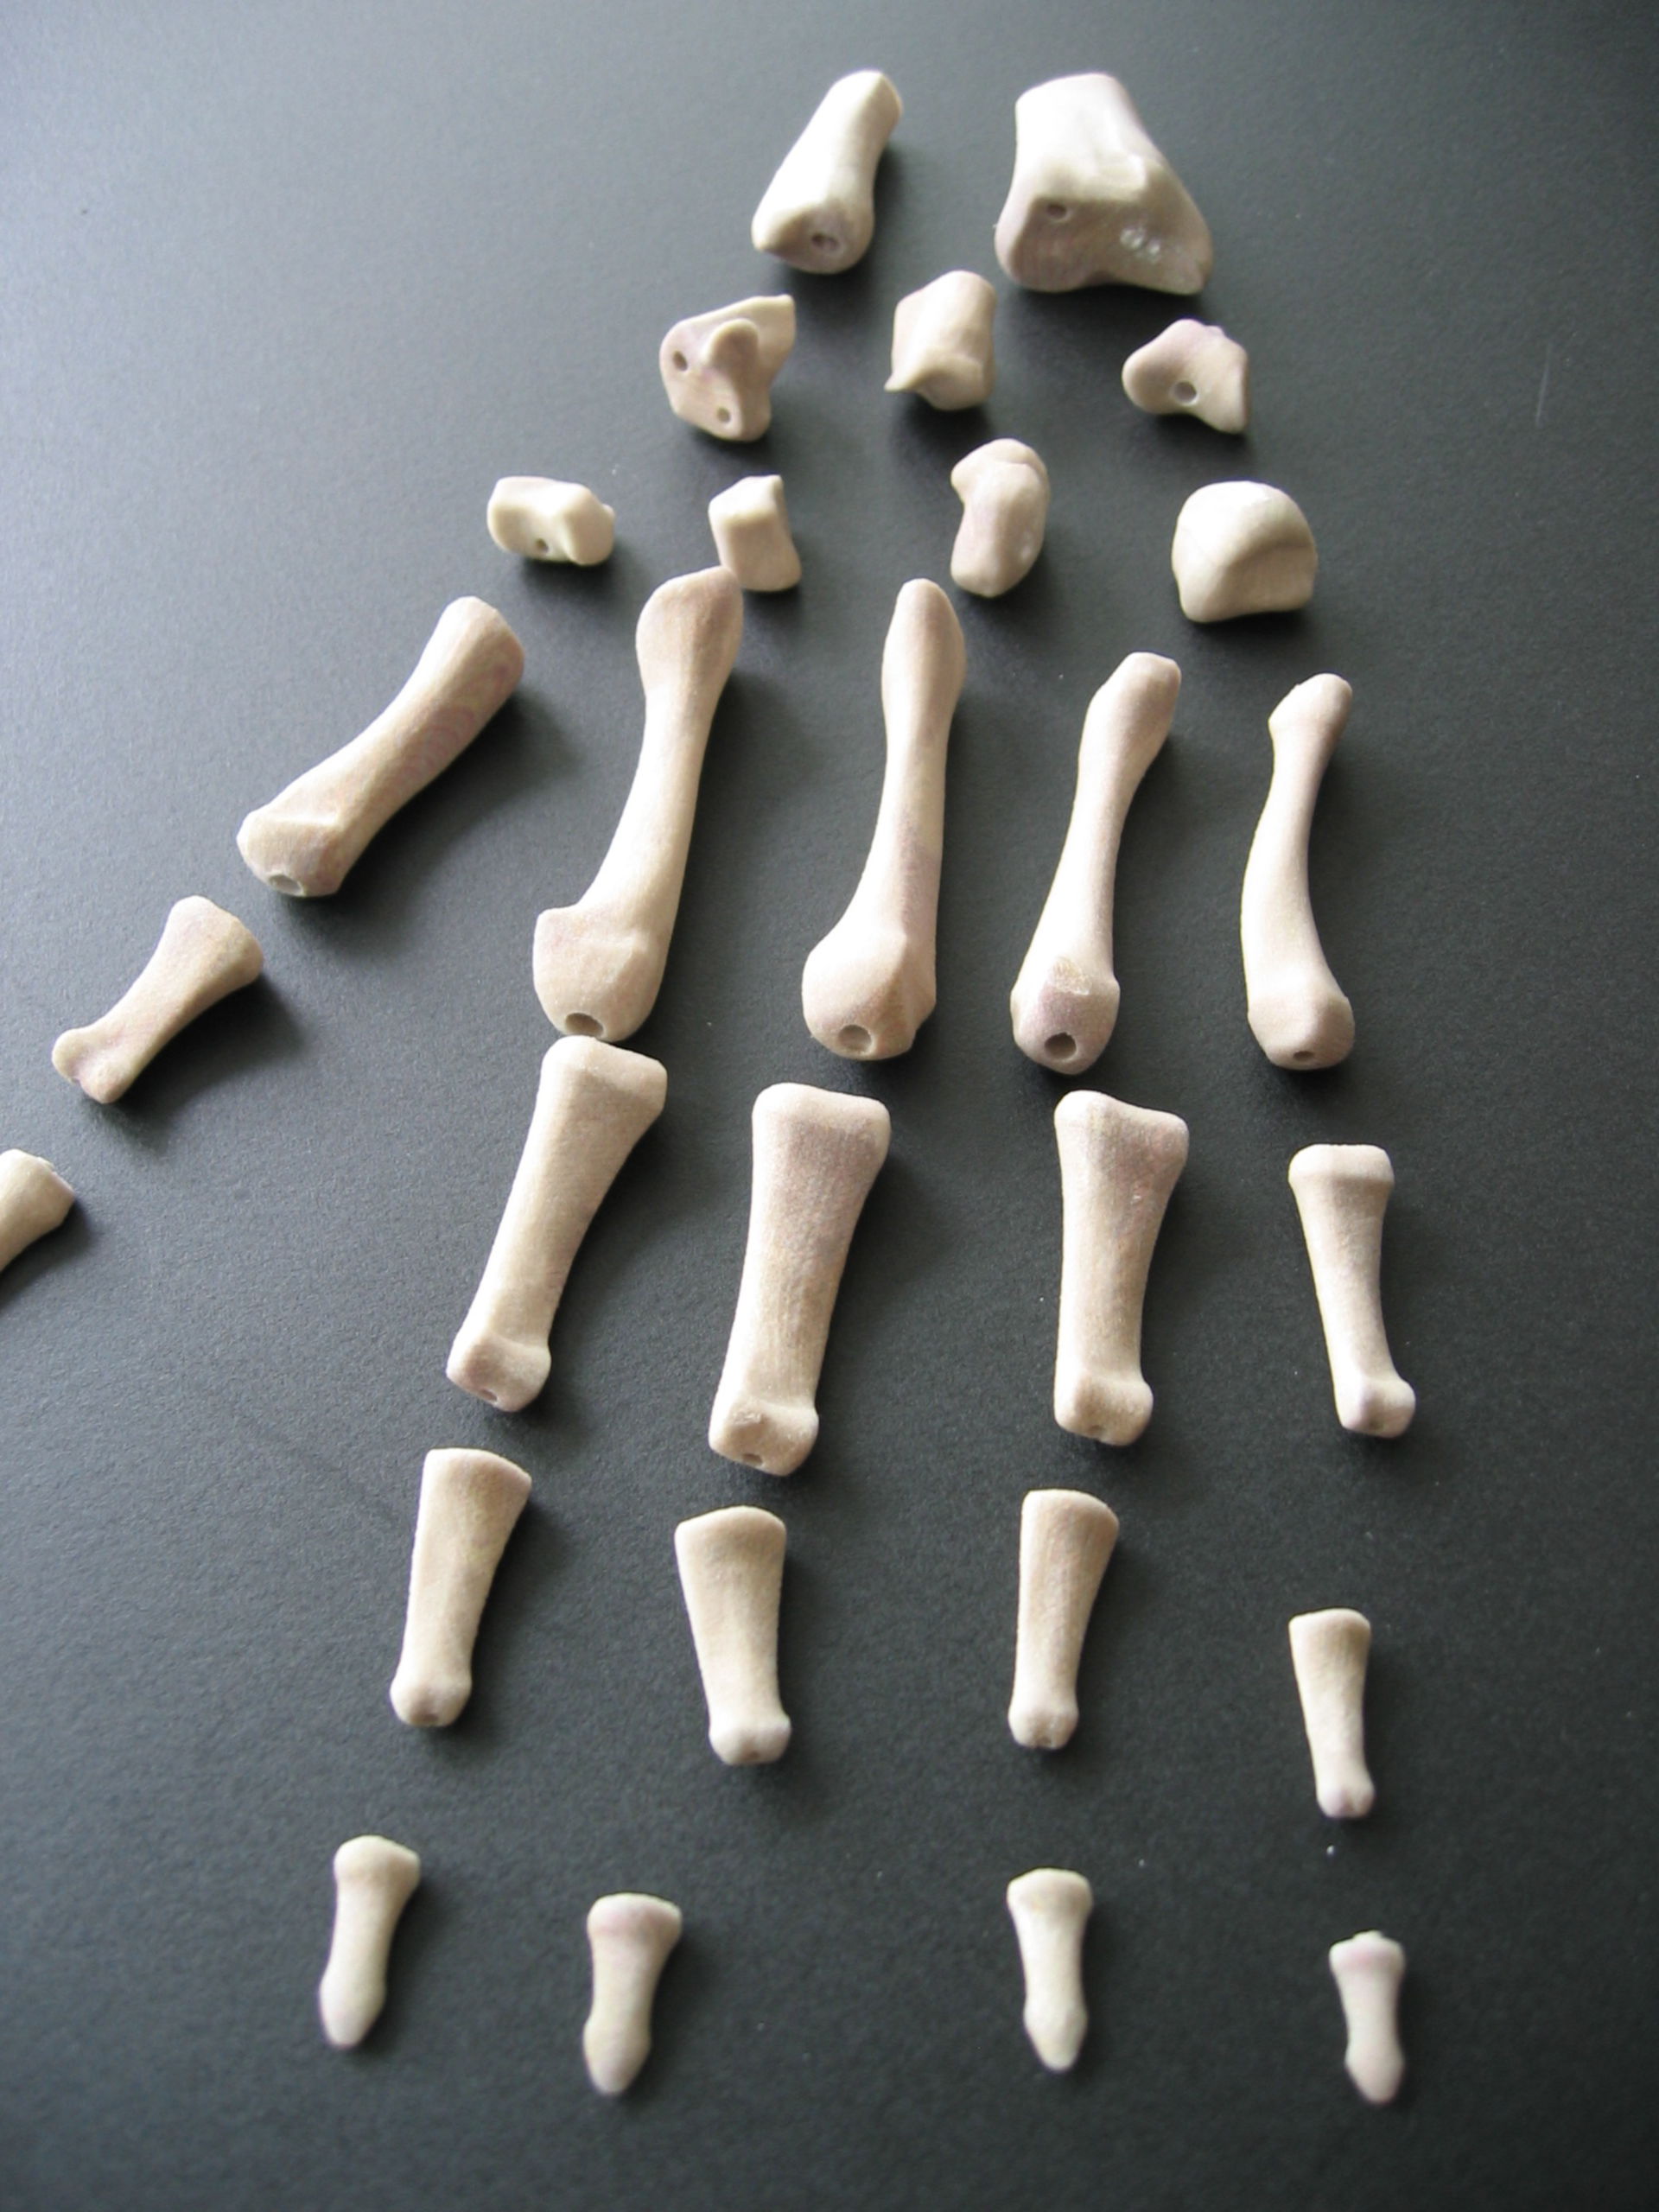 Bones of the hand.